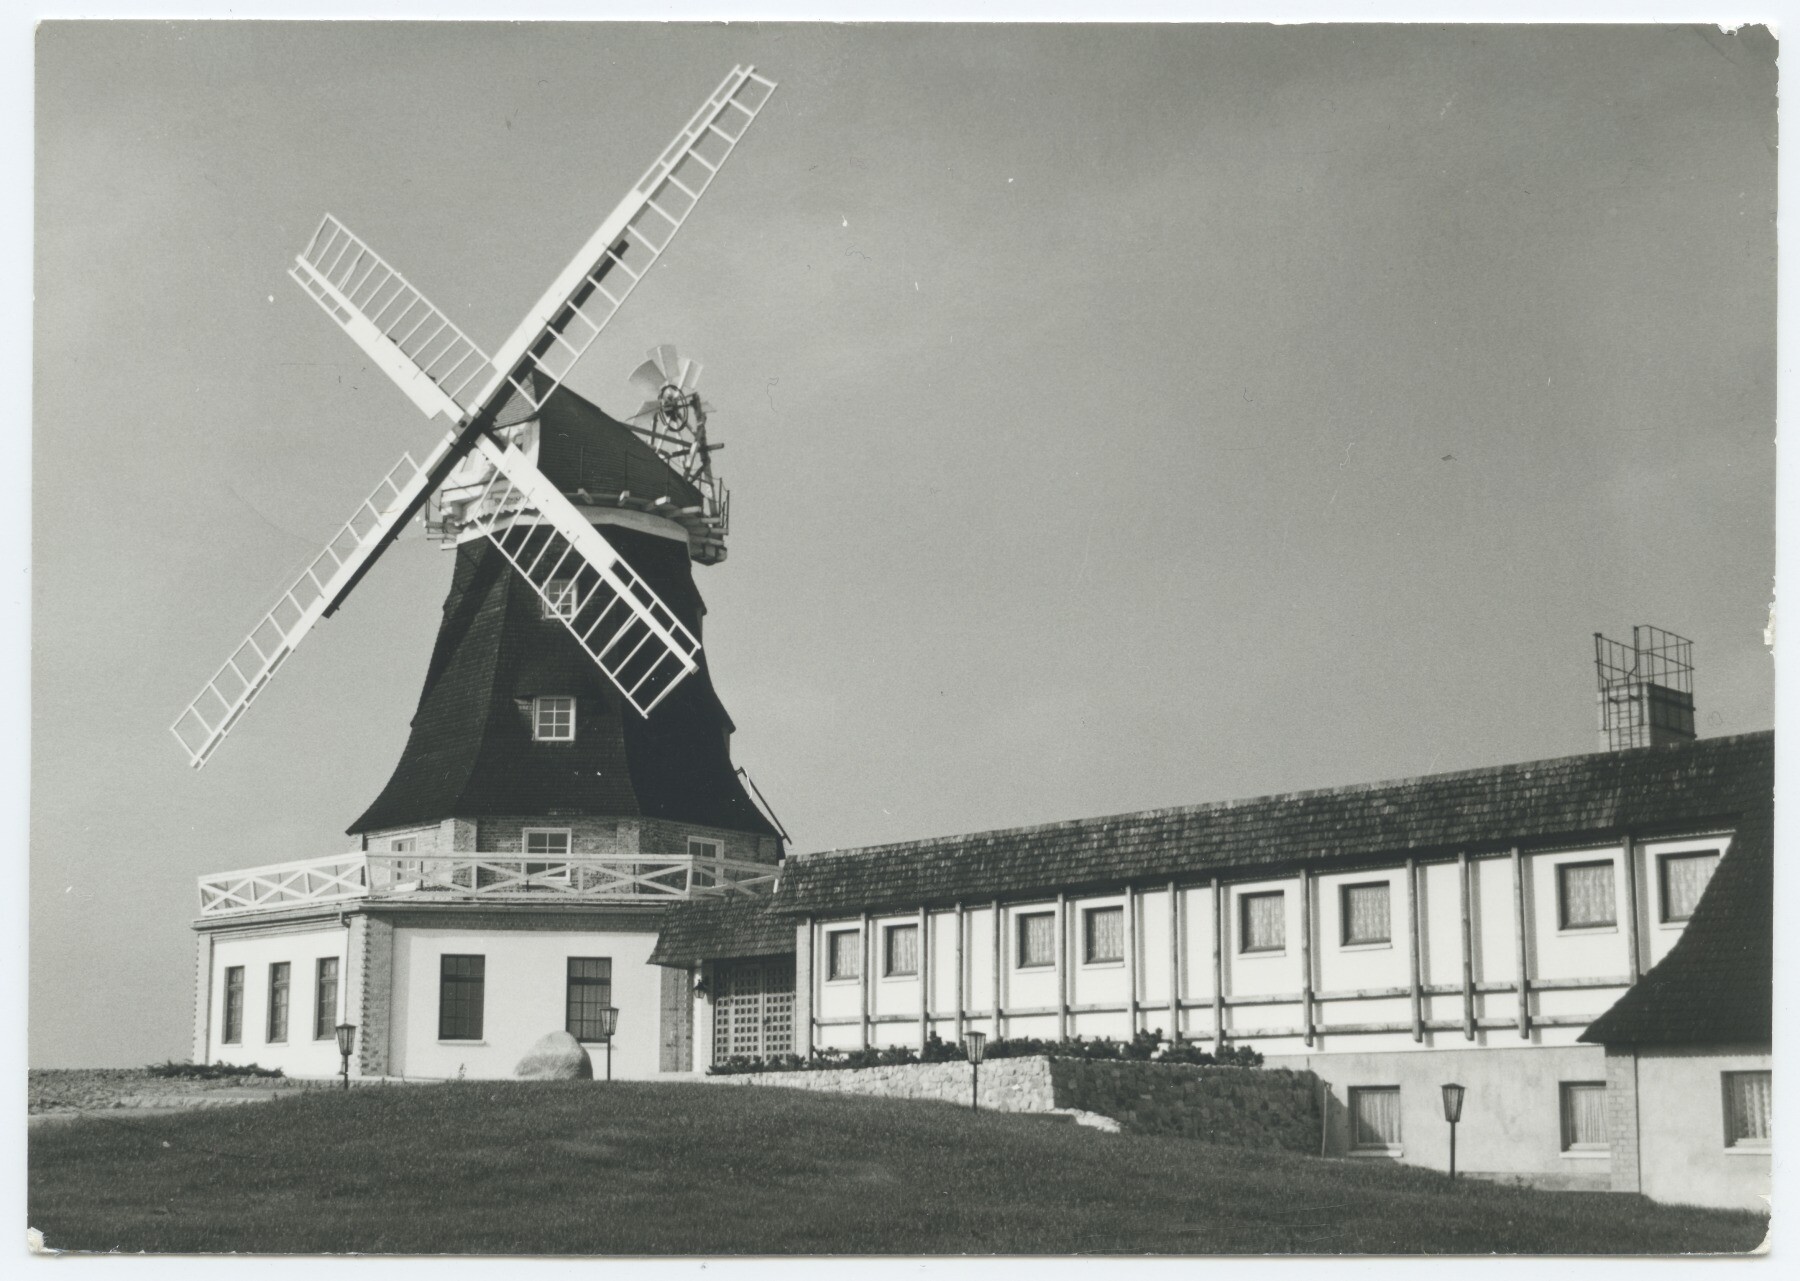 Gallerieholländerwindmühle Klütz (Historische Mühle von Sanssouci CC BY-NC-ND)